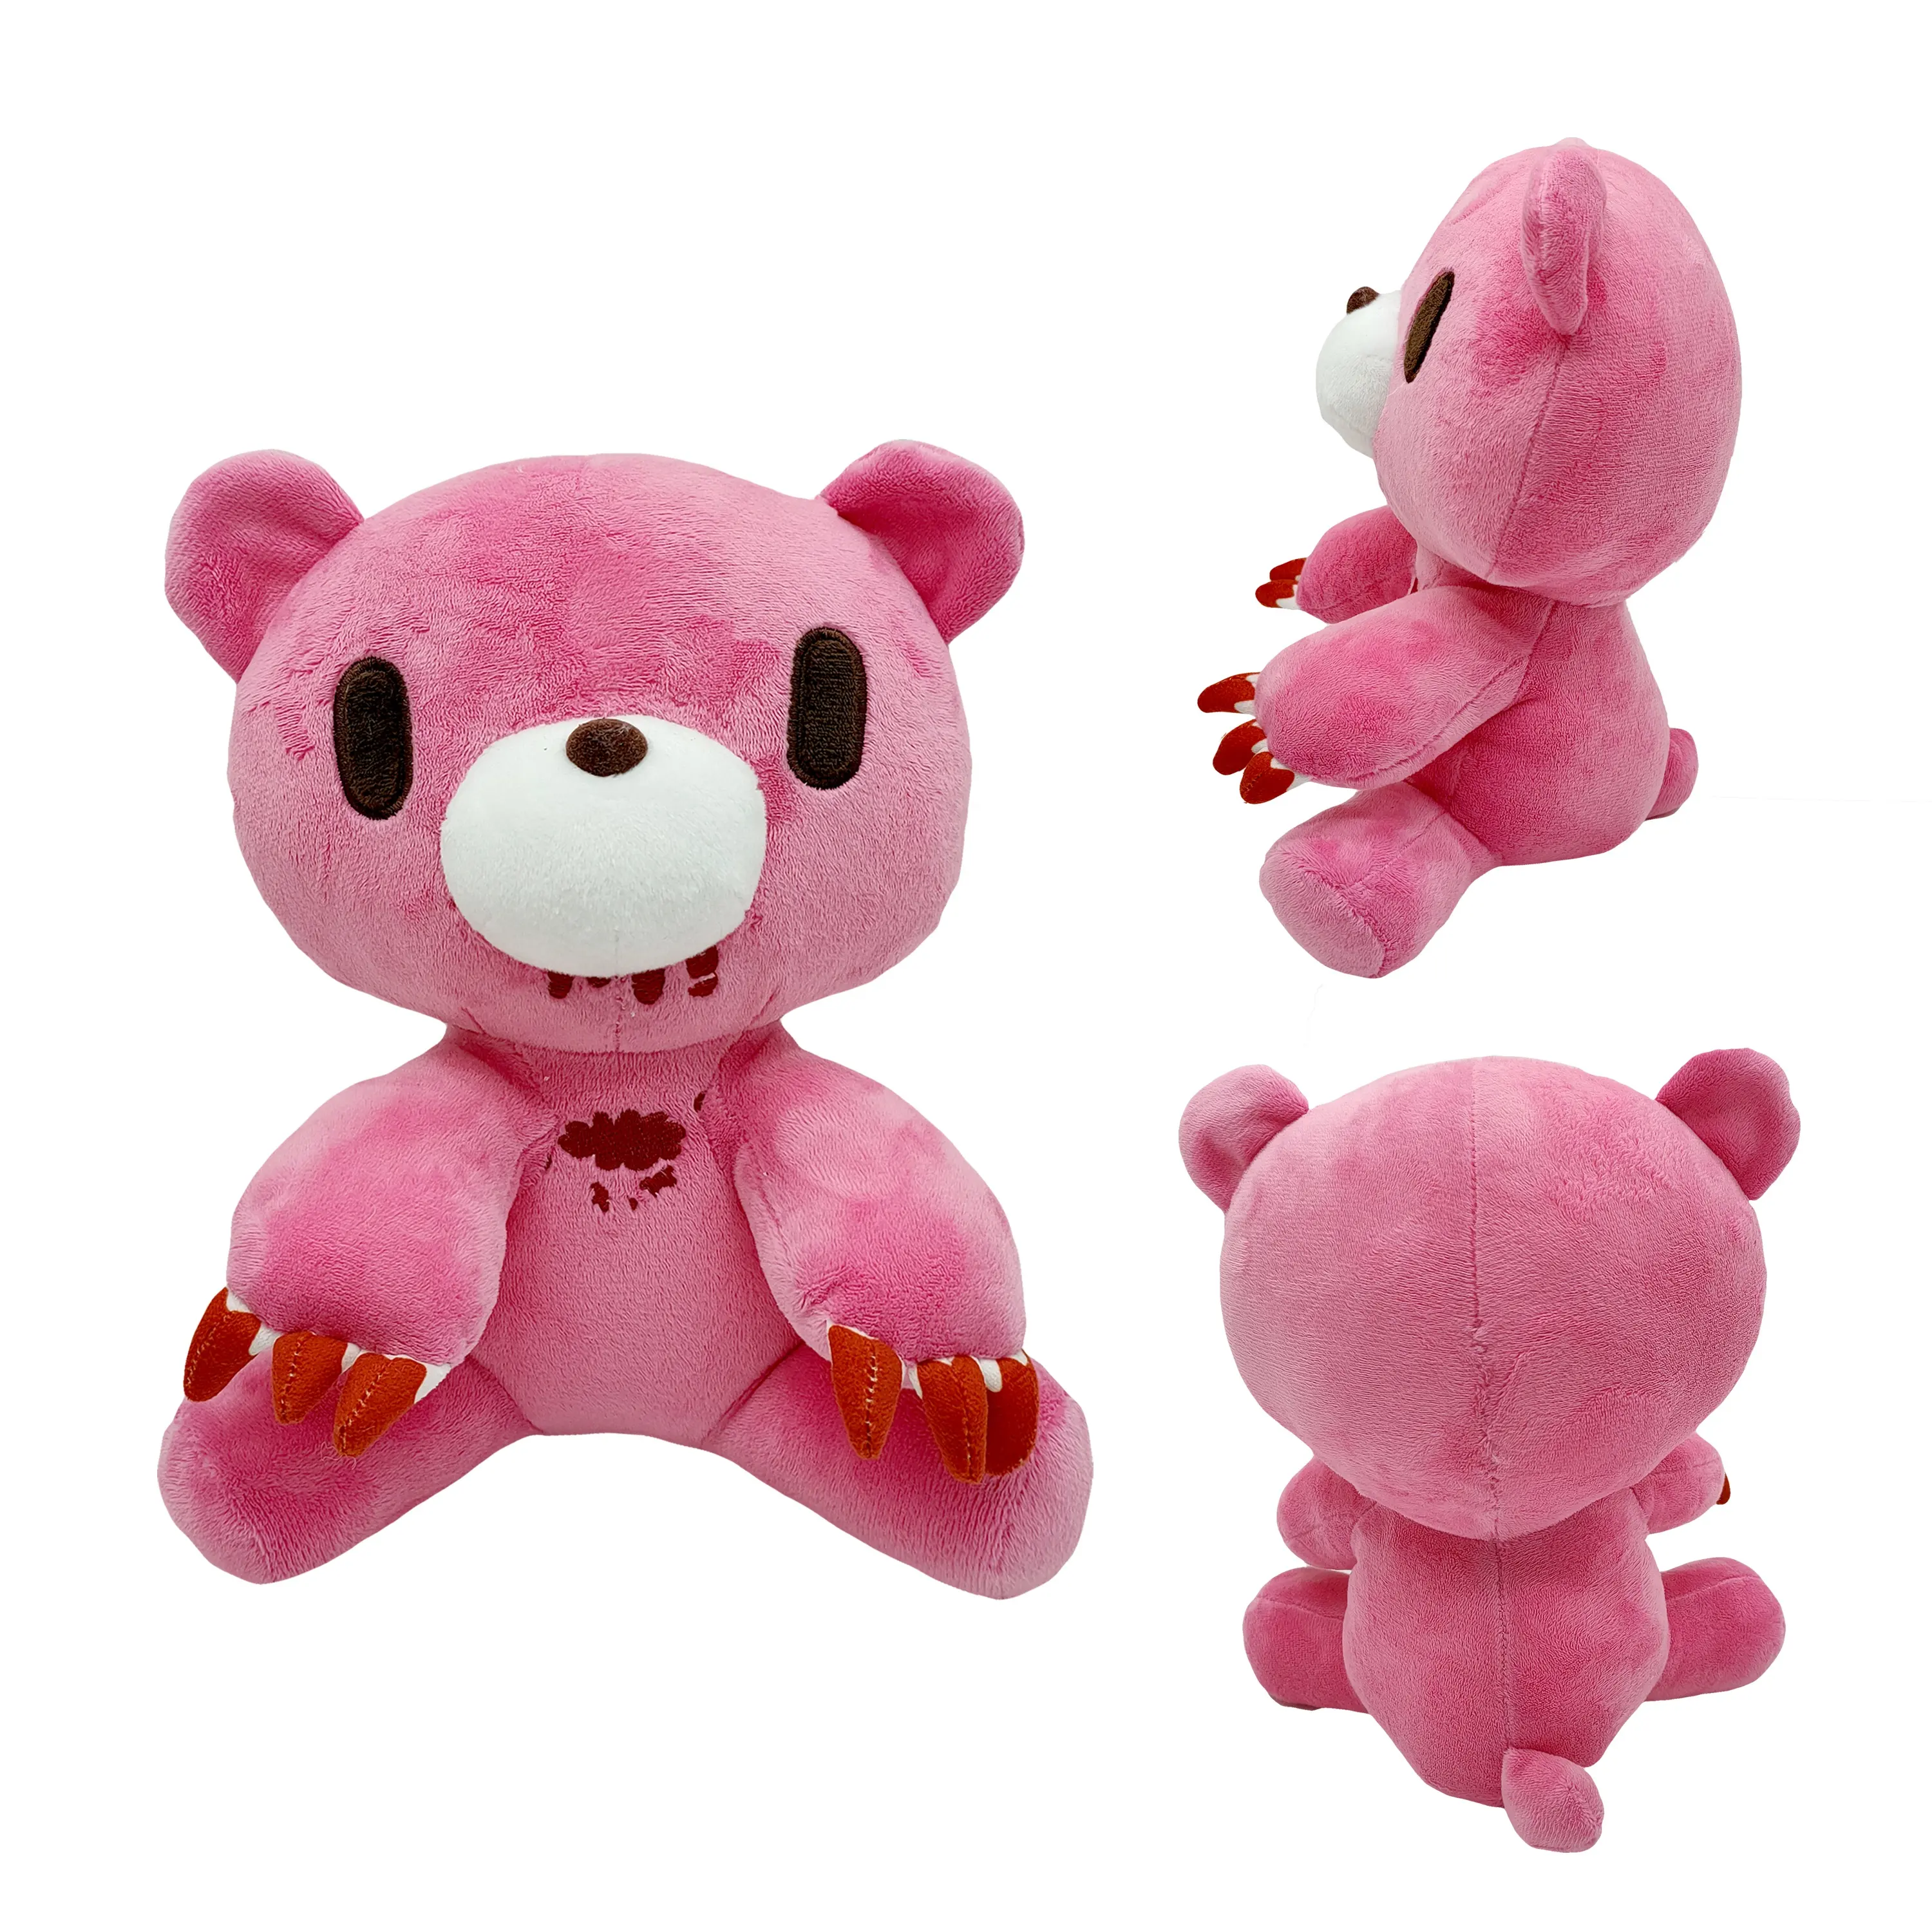 ตุ๊กตาหมีอึมครึม24ซม.,ตุ๊กตาของเล่นตุ๊กตาหมูยัดไส้สีชมพูของขวัญสำหรับเด็ก